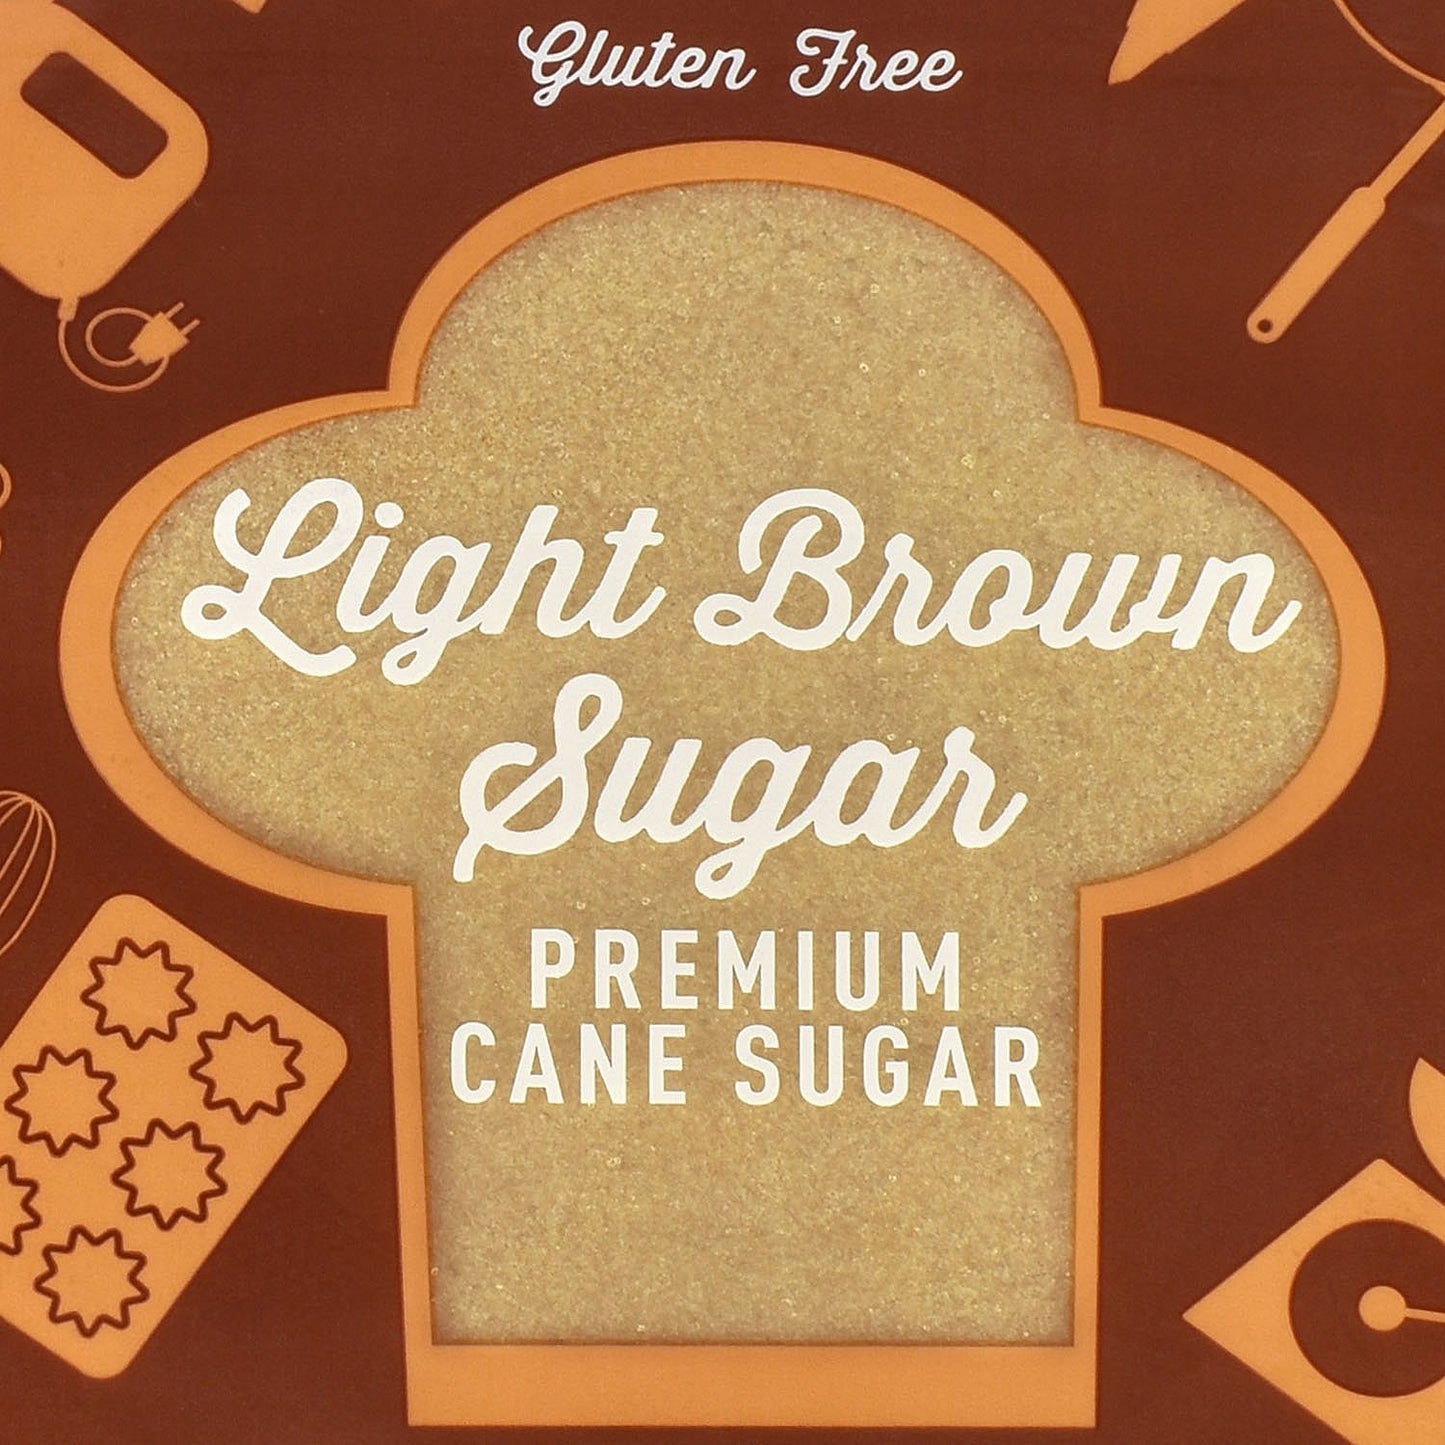 Member's Mark Light Brown Sugar (7 lbs.)